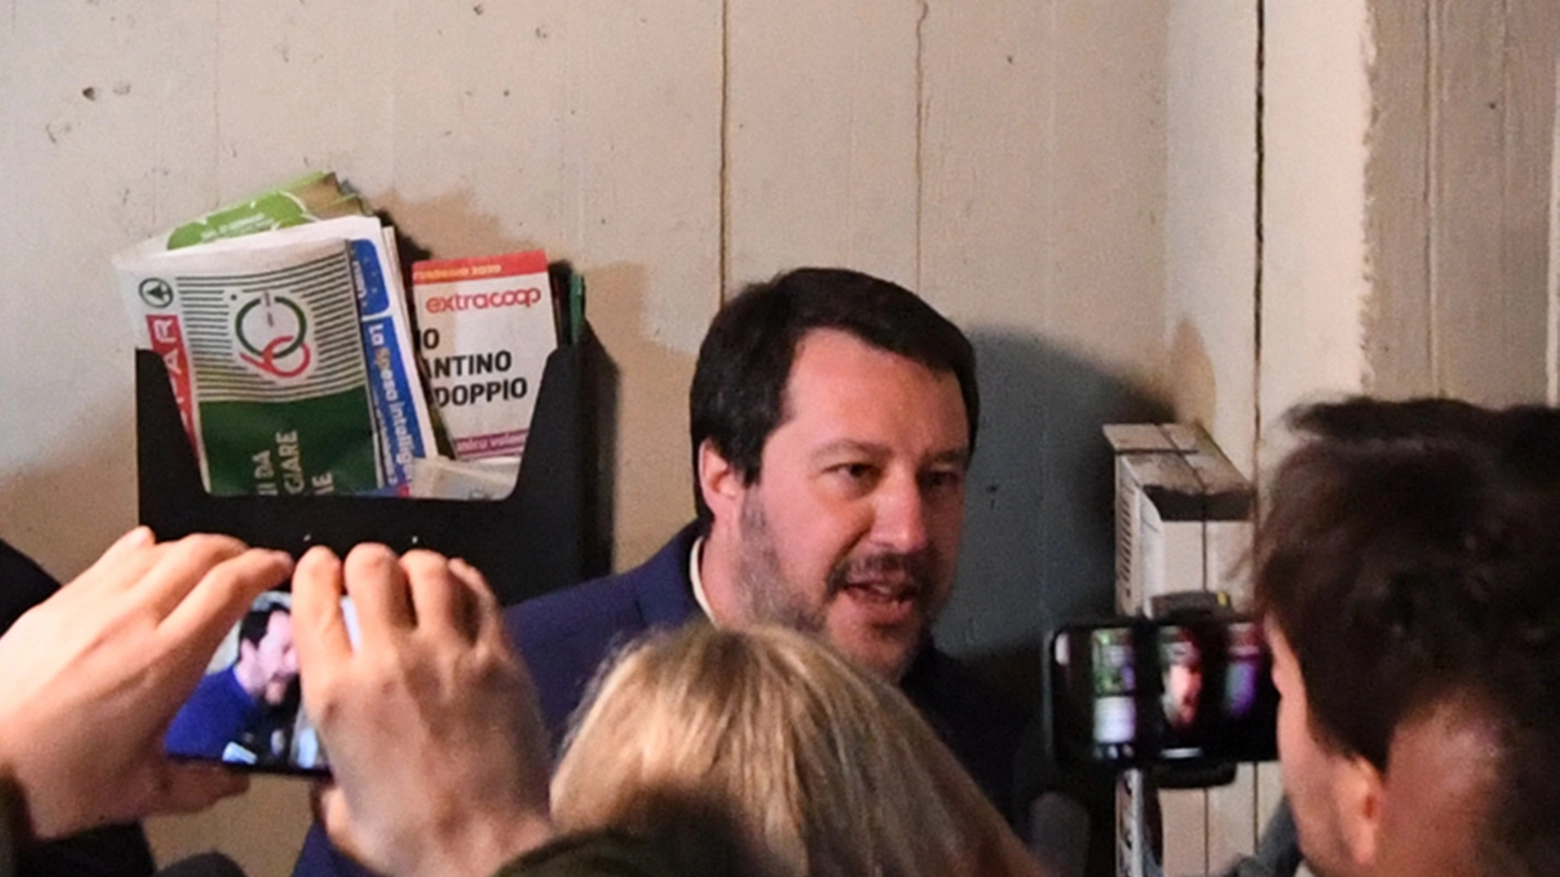 Salvini al Pilastro di Bologna al citofono di un residente. "Lei spaccia?"